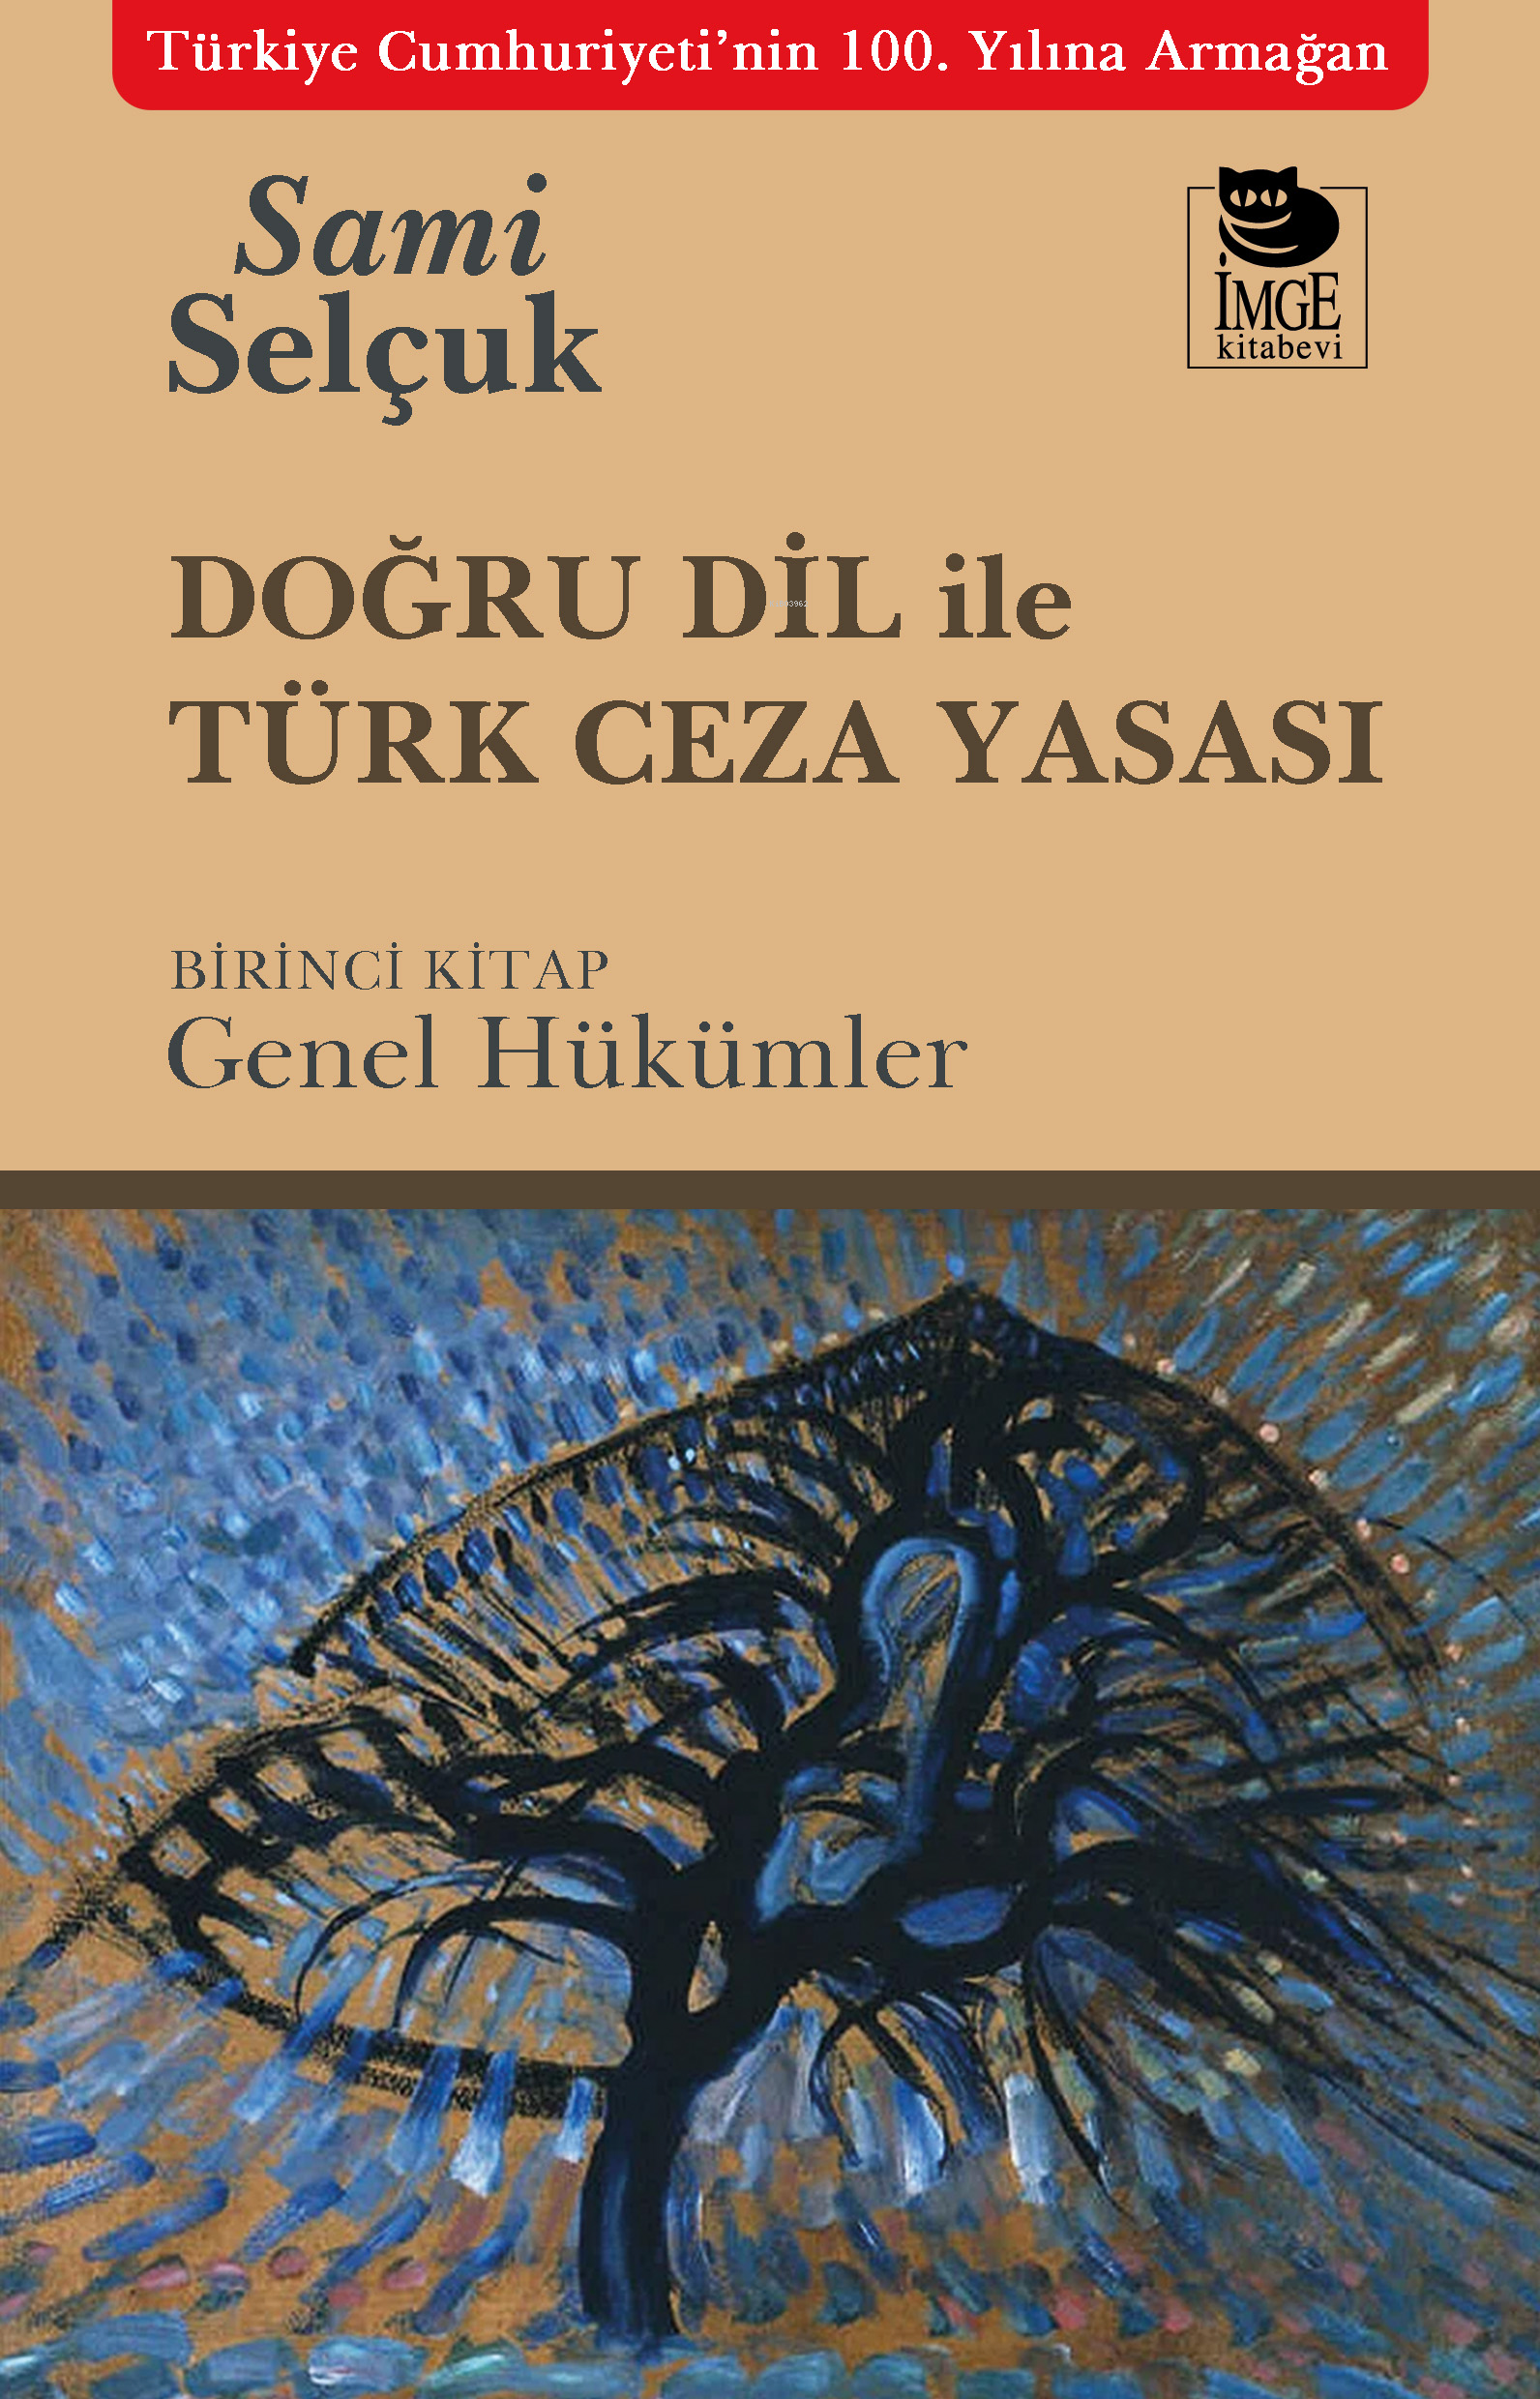 Doğru Dil ile Türk Ceza Yasası ;Birinci Kitap: Genel Hükümler